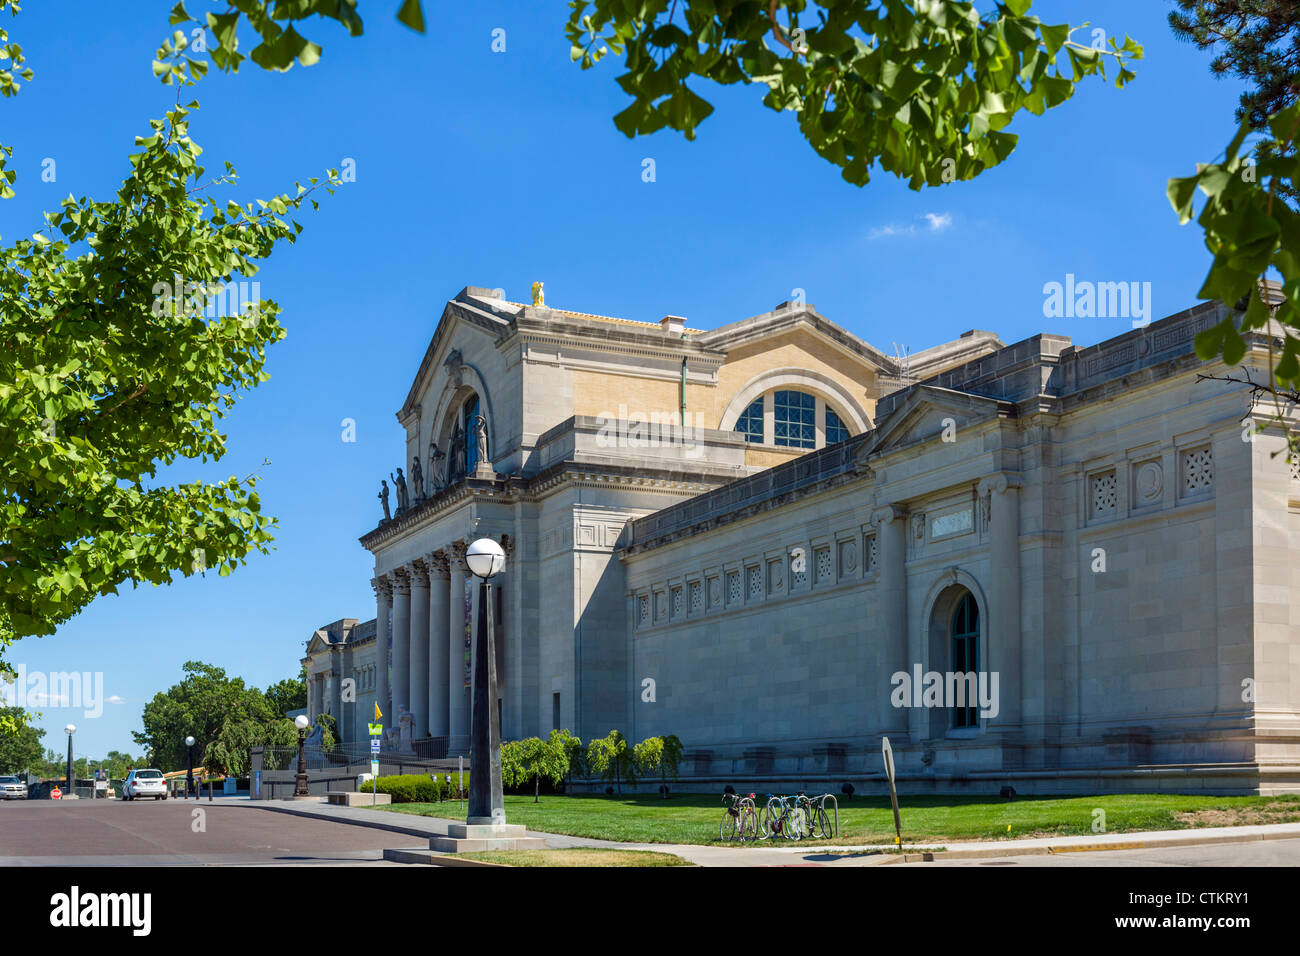 The St Louis Art Museum, Forest Park, St Louis, Missouri, USA Stock Photo